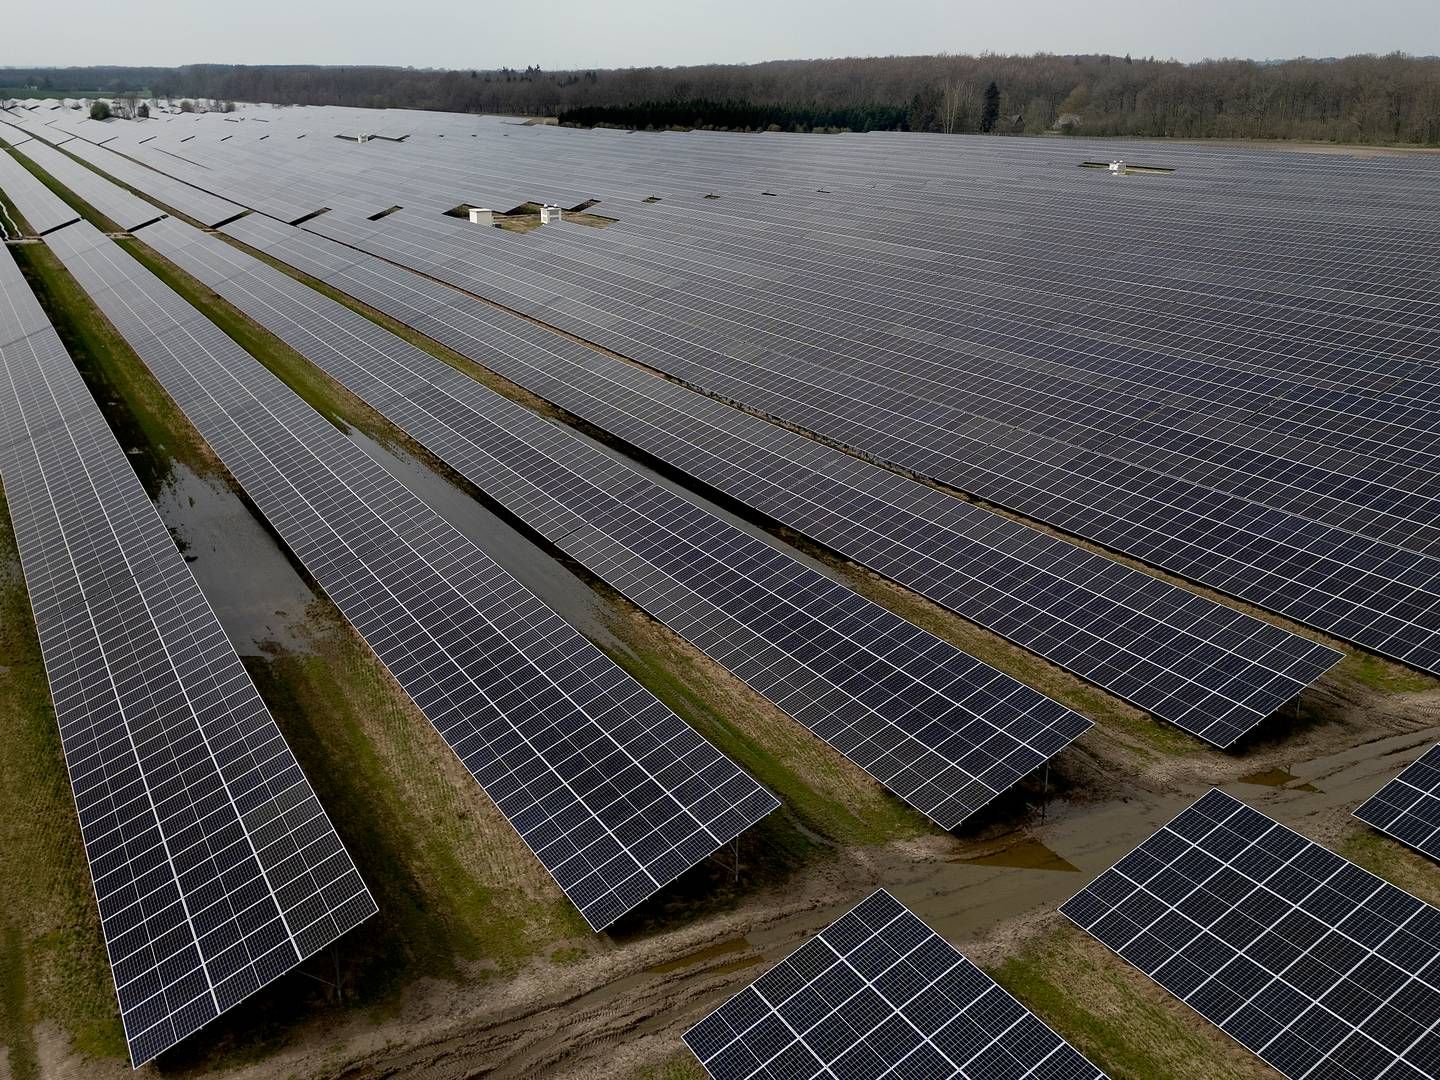 Arkivfoto af solcelleanlæg ved Haslev. Glentras fokus er vækstfirmaer, der opererer inden for alt fra sol og vind til biobrændstoffer. | Photo: Finn Frandsen